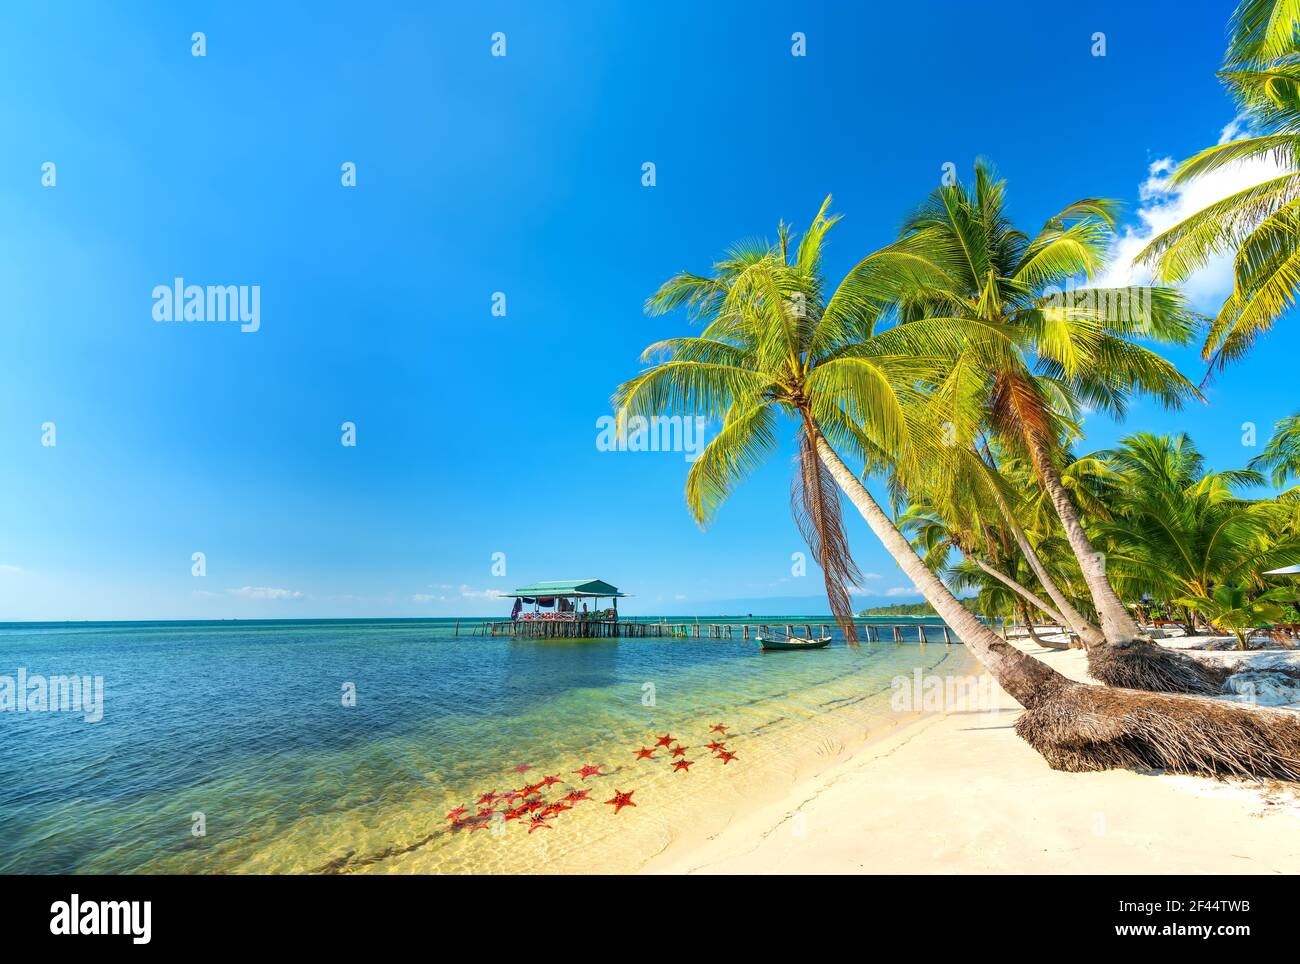 Paisaje marino con palmeras tropicales en una hermosa playa de arena en la isla Phu Quoc, Vietnam. Esta es una de las mejores playas de Vietnam. Foto de stock